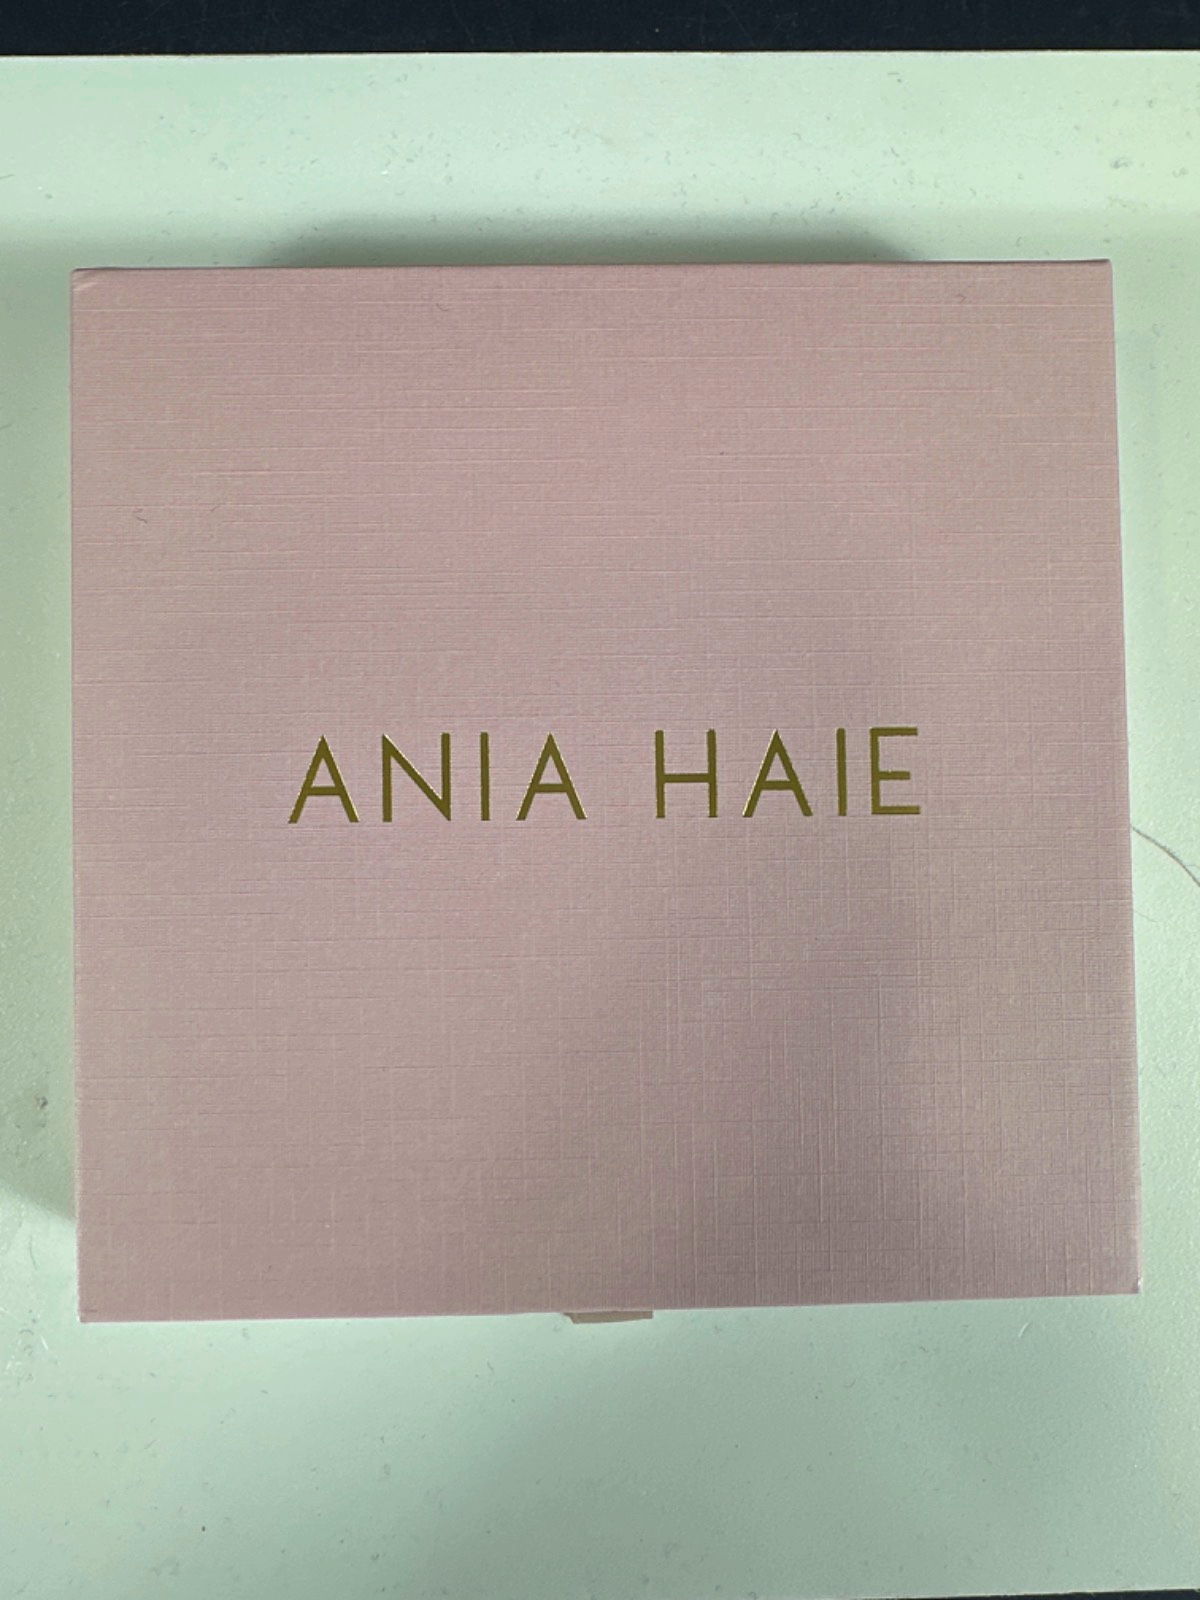 Ania Haie Gold Lapis Evil Eye Bracelet - GIFT BOXED